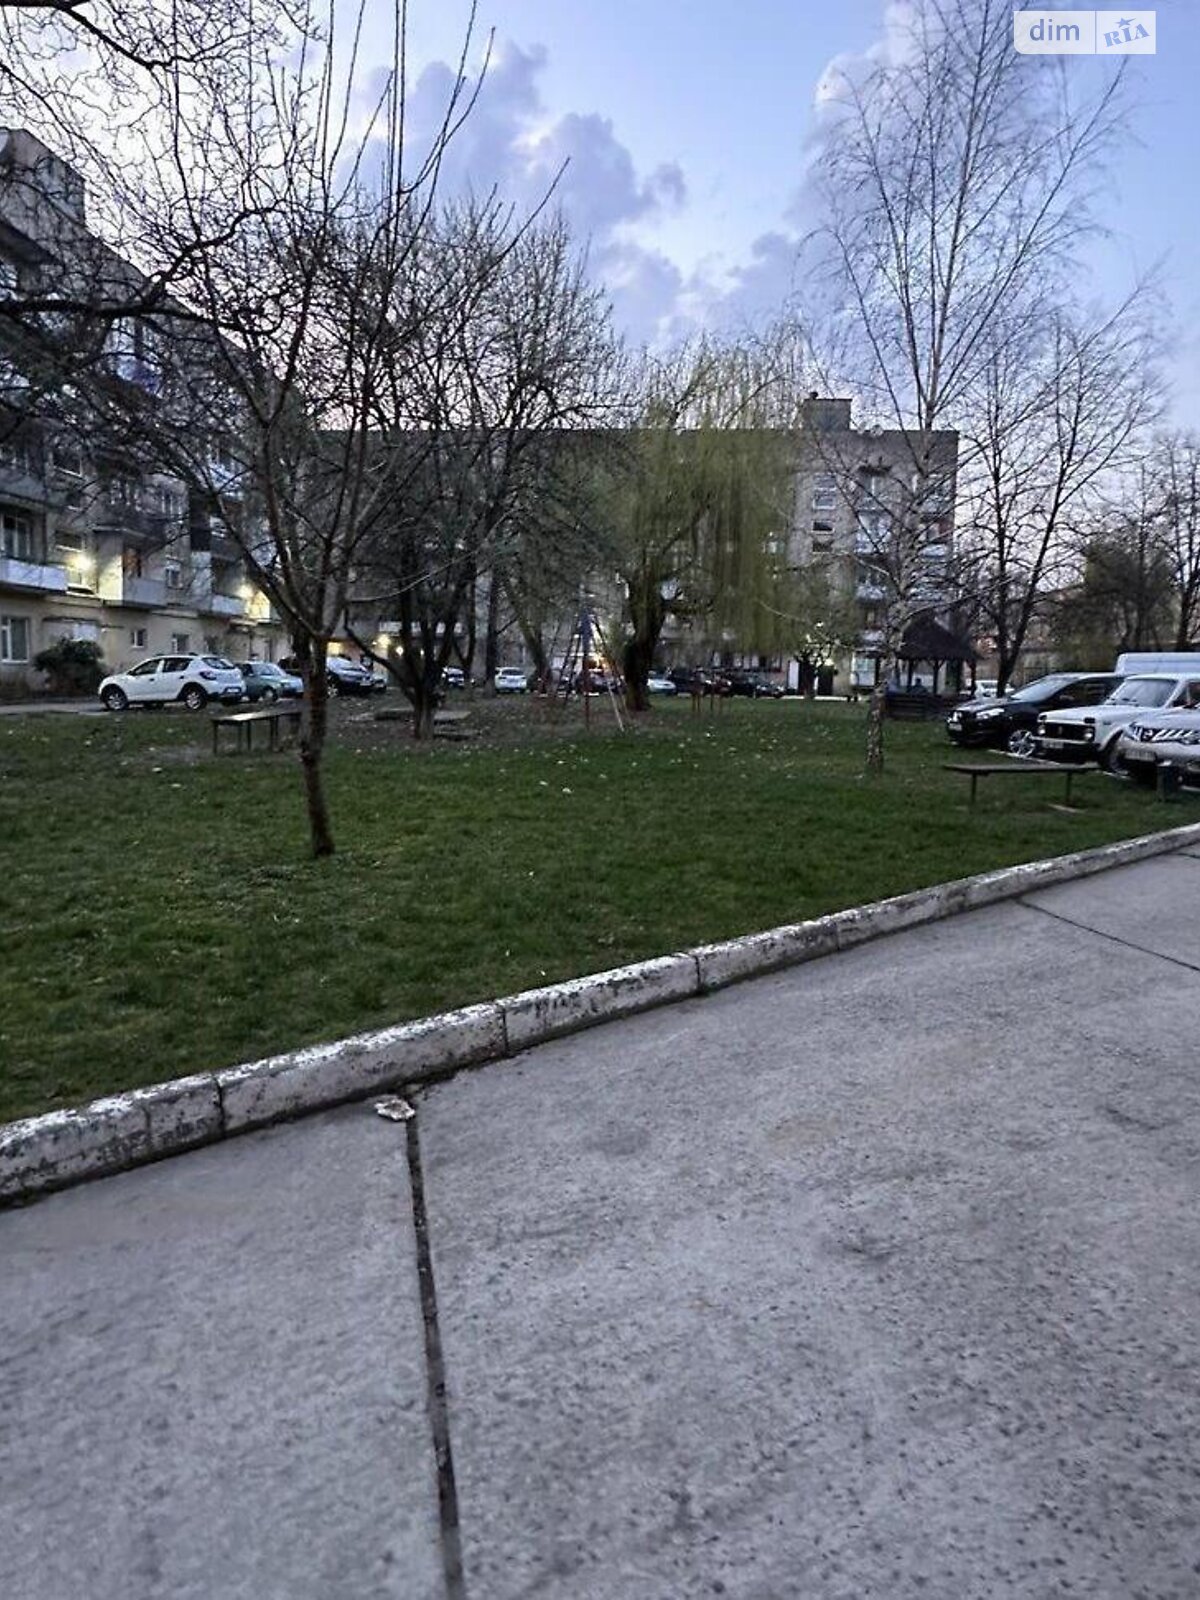 Продажа двухкомнатной квартиры в Ужгороде, на ул. Серебристая 1А, район БАМ фото 1